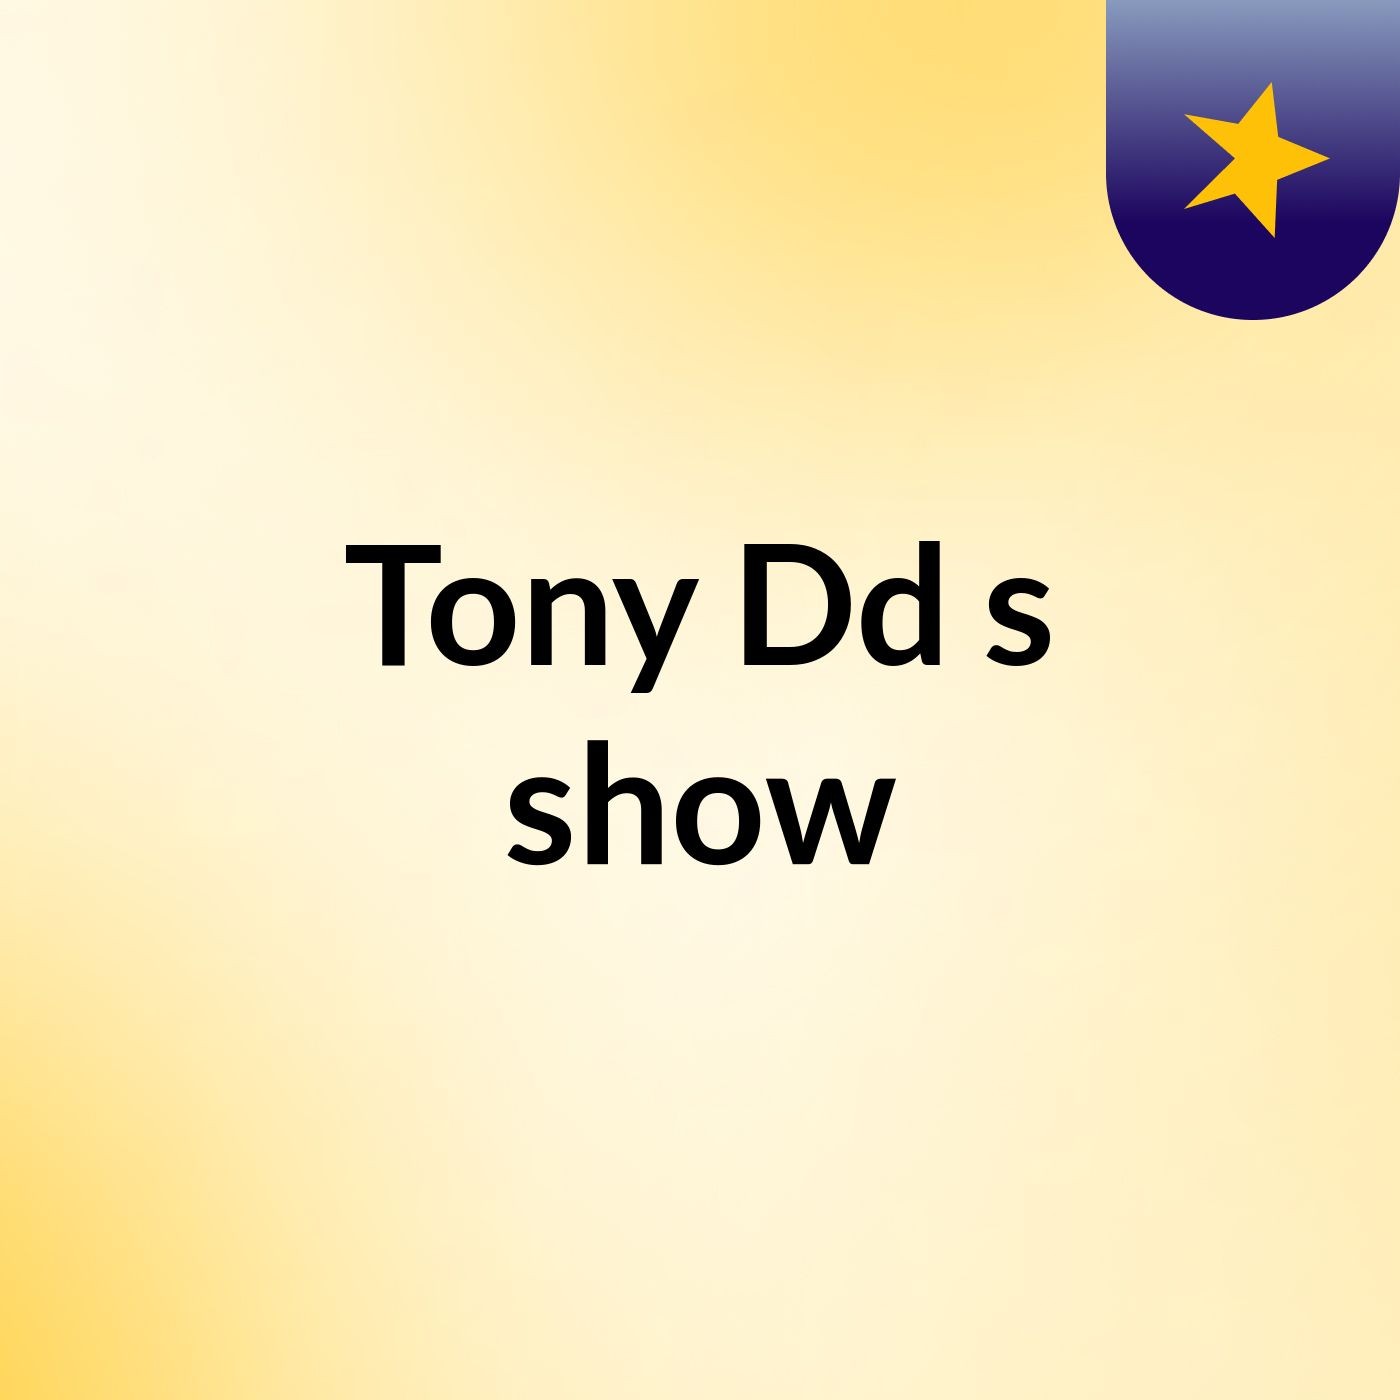 Tony Dd's show